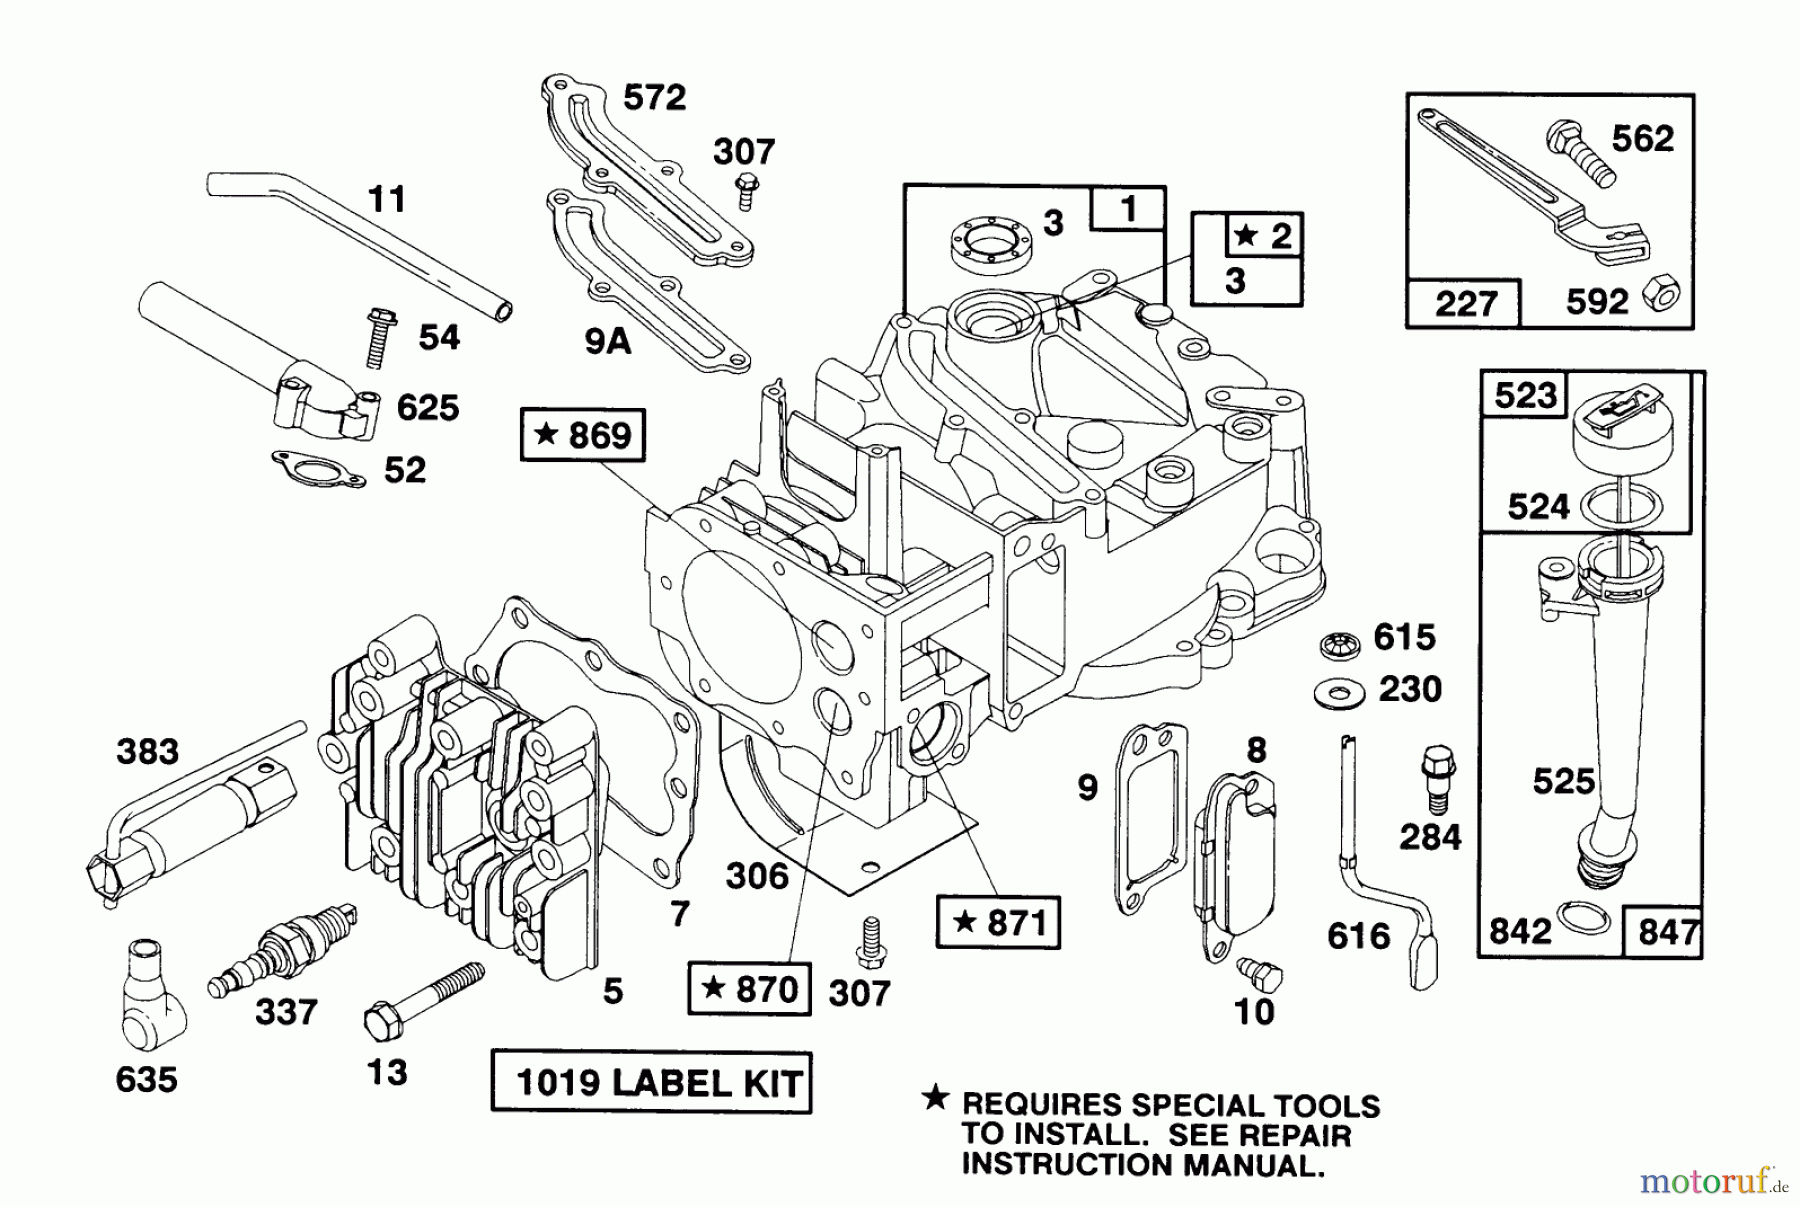  Toro Neu Mowers, Walk-Behind Seite 1 20668 - Toro Lawnmower, 1991 (1000001-1999999) ENGINE MODEL 124702-3115-01 #1